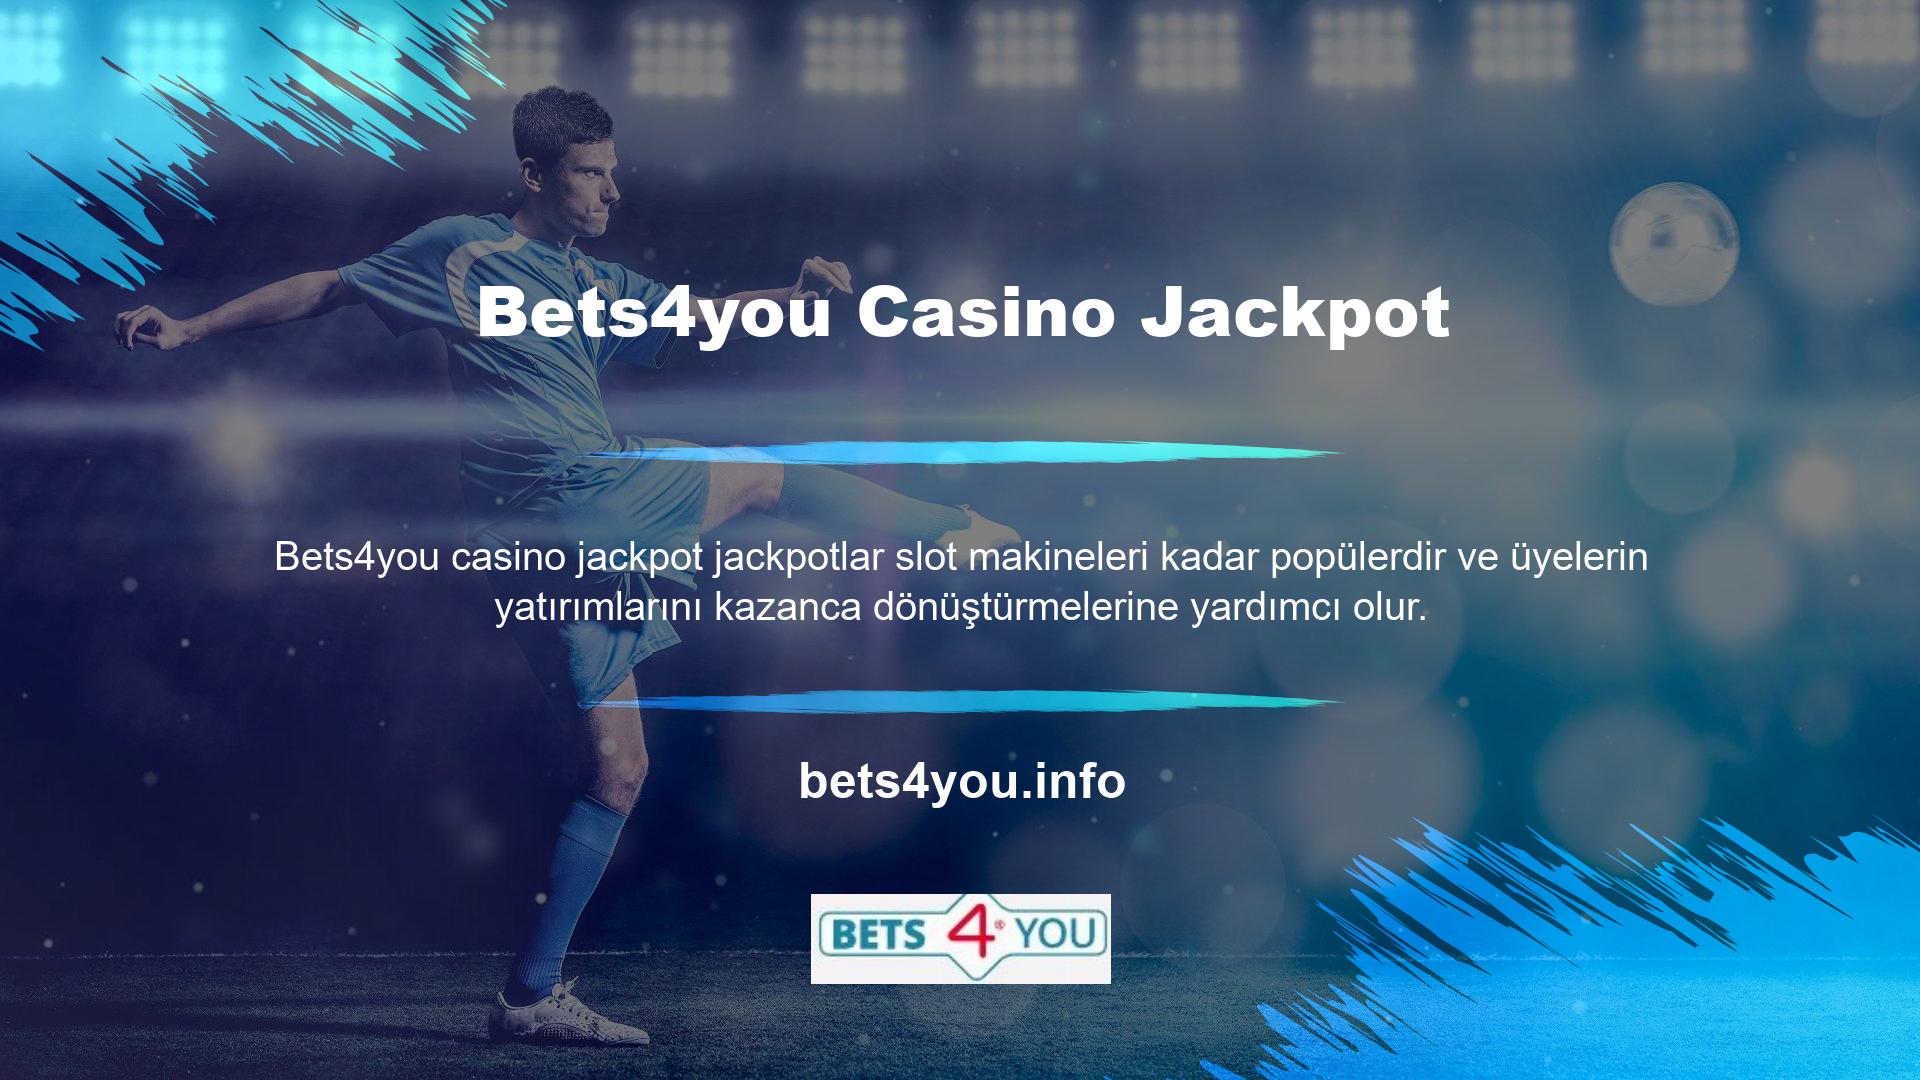 Bets4you casino oyunlarında jackpot sembollerini toplamak önemlidir ve alternatif semboller sürekli güncellenmektedir